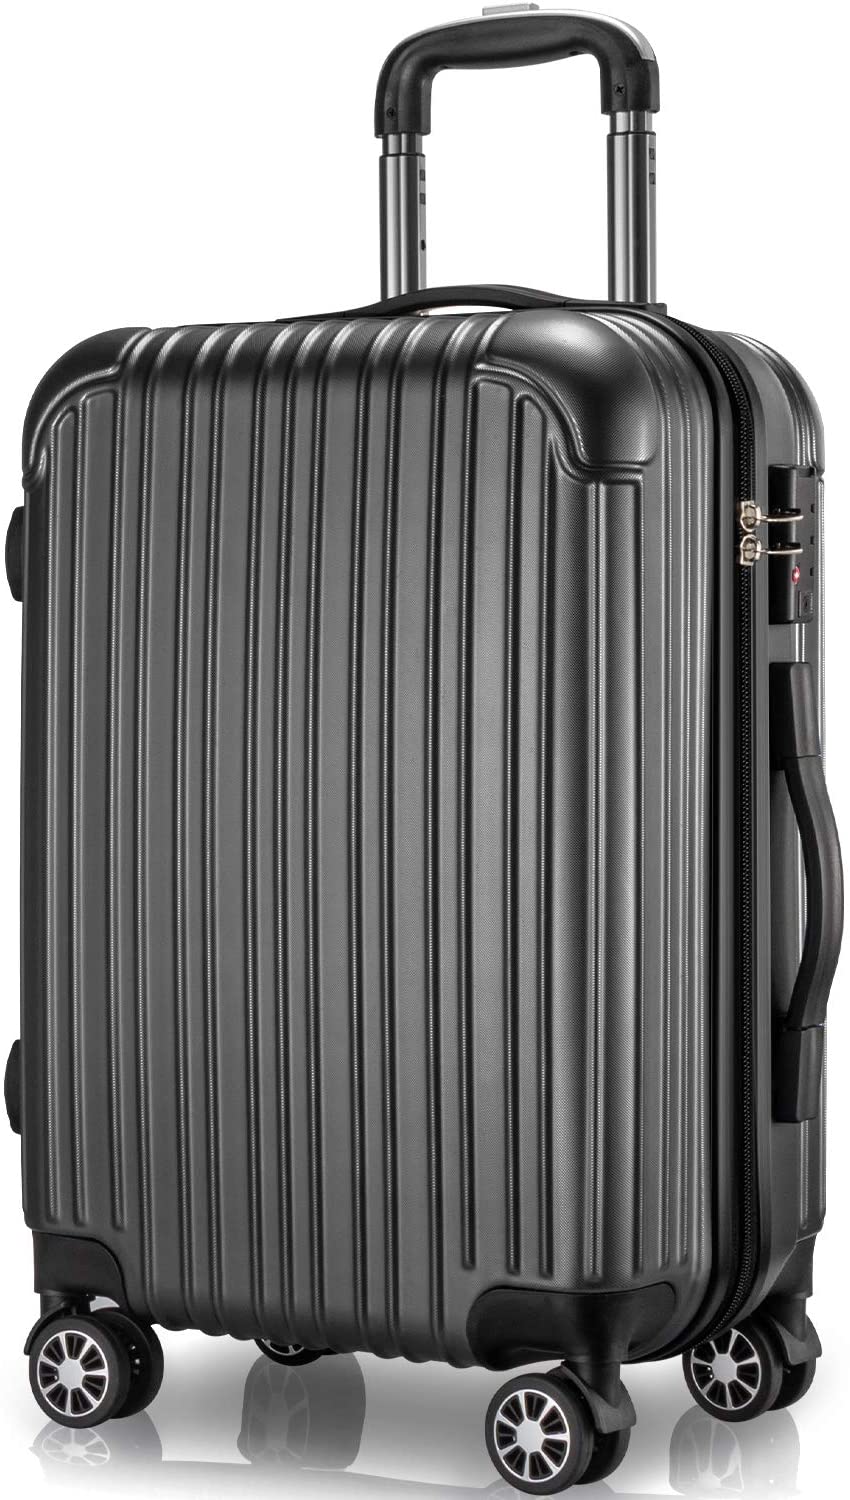 スーツケース 機内持ち込み S サイズ キャリーケース キャリーバッグ 2